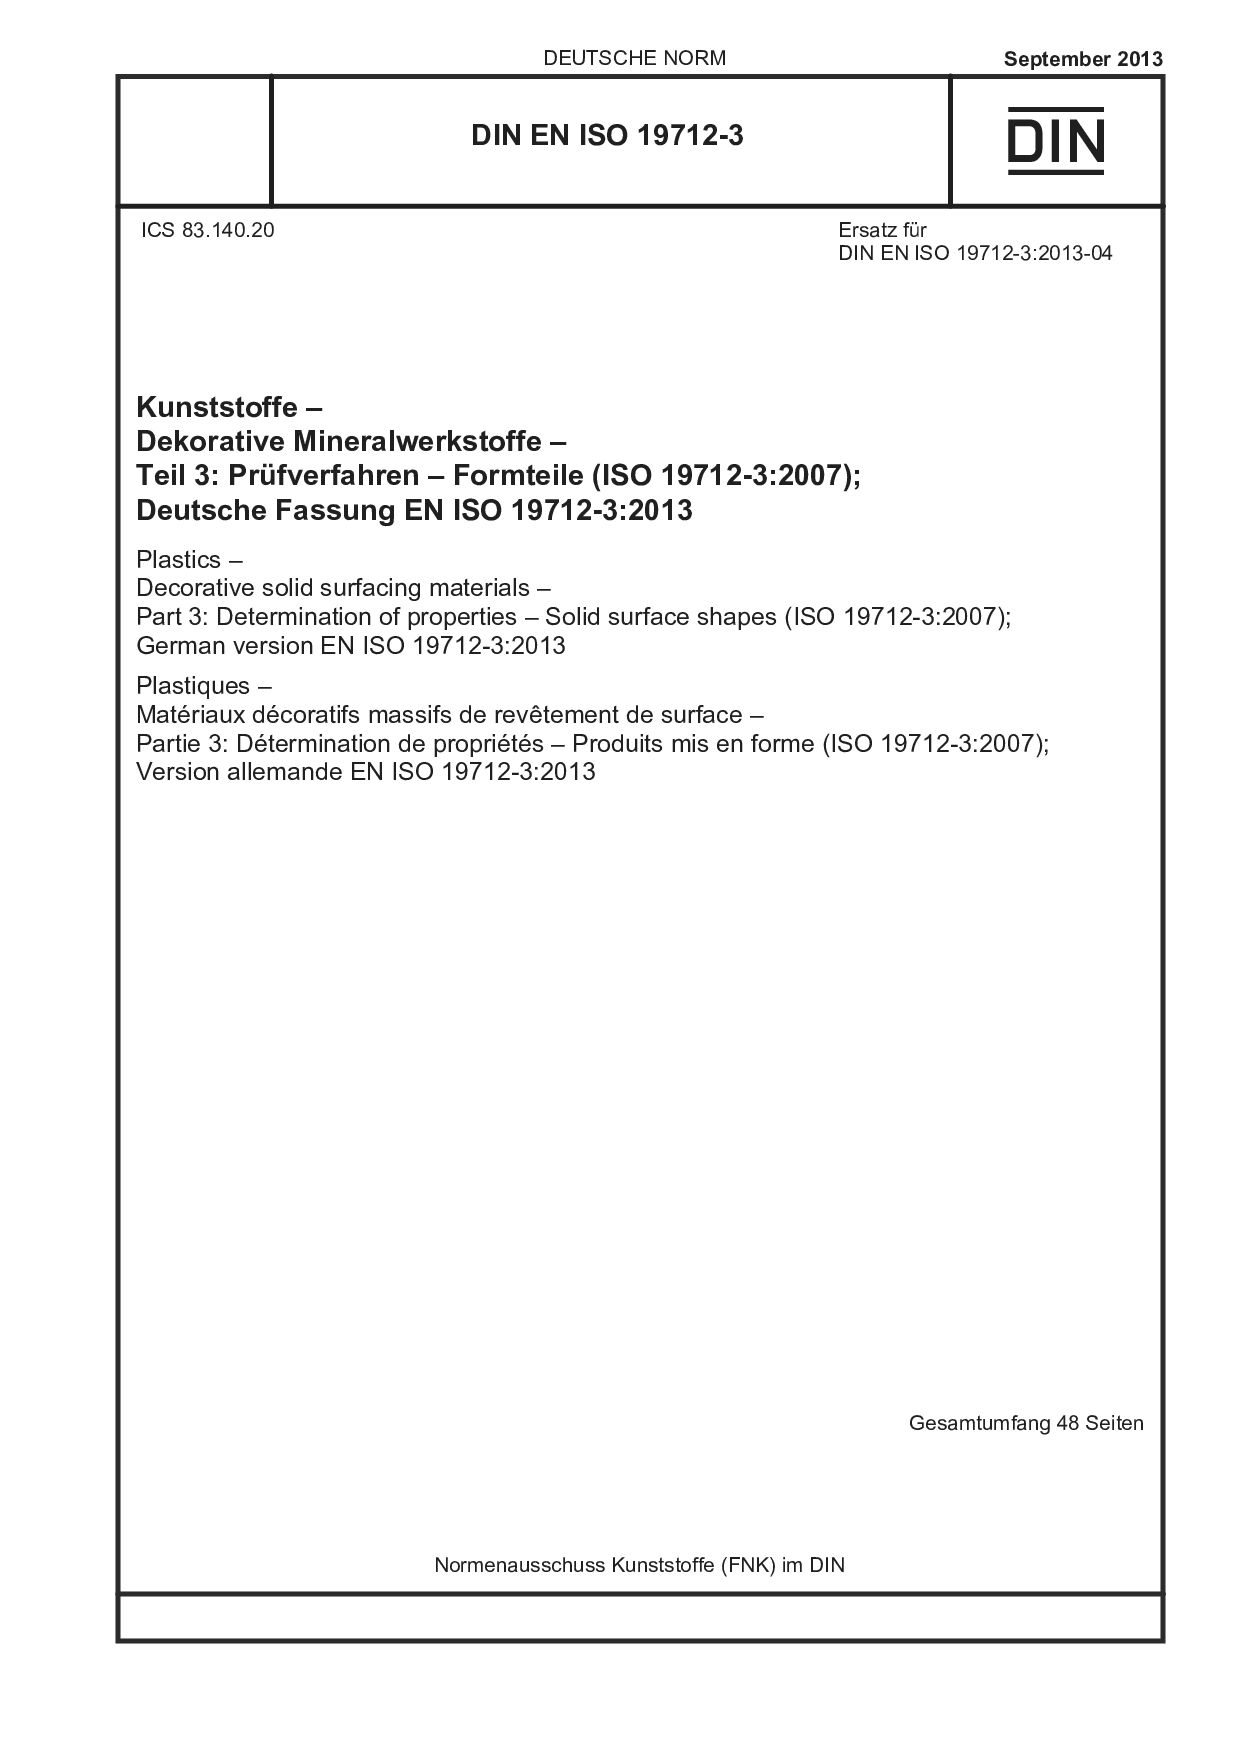 DIN EN ISO 19712-3:2013